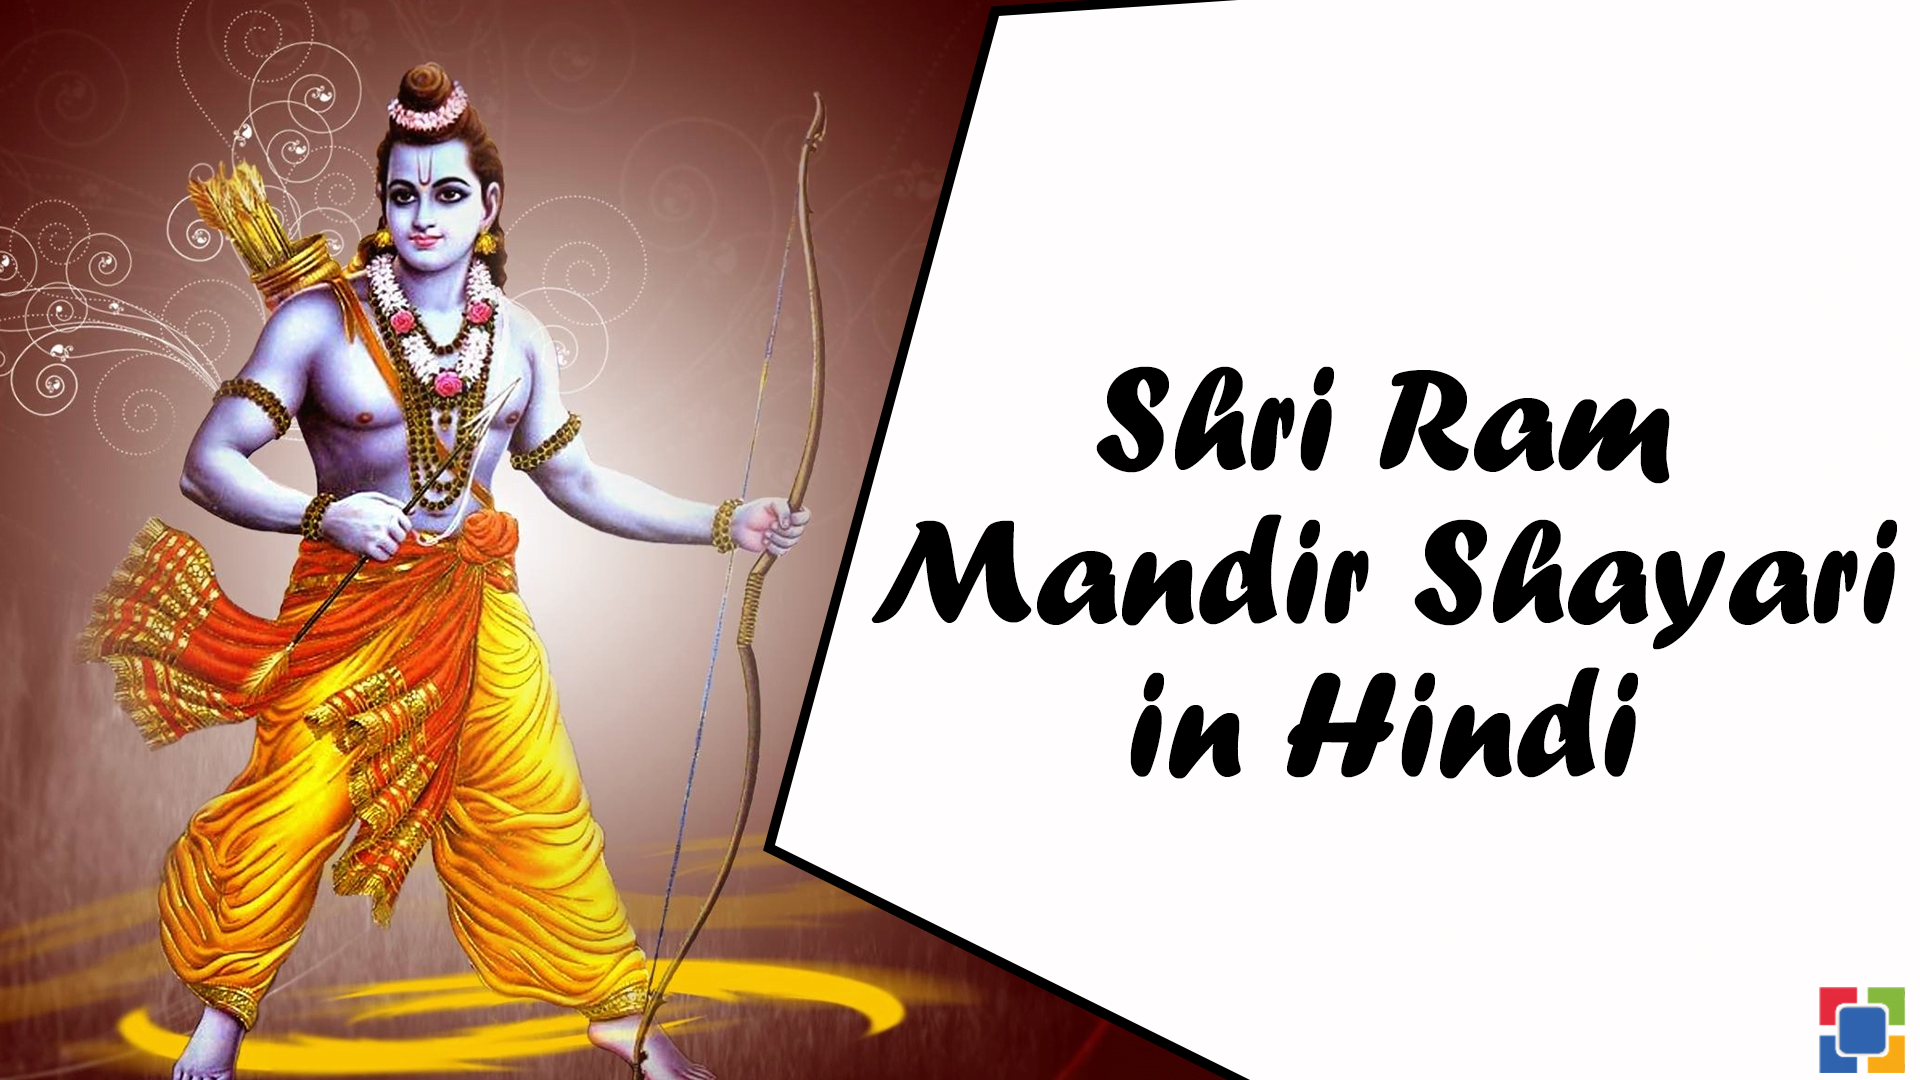 Shri Ram Mandir Shayari in Hindi